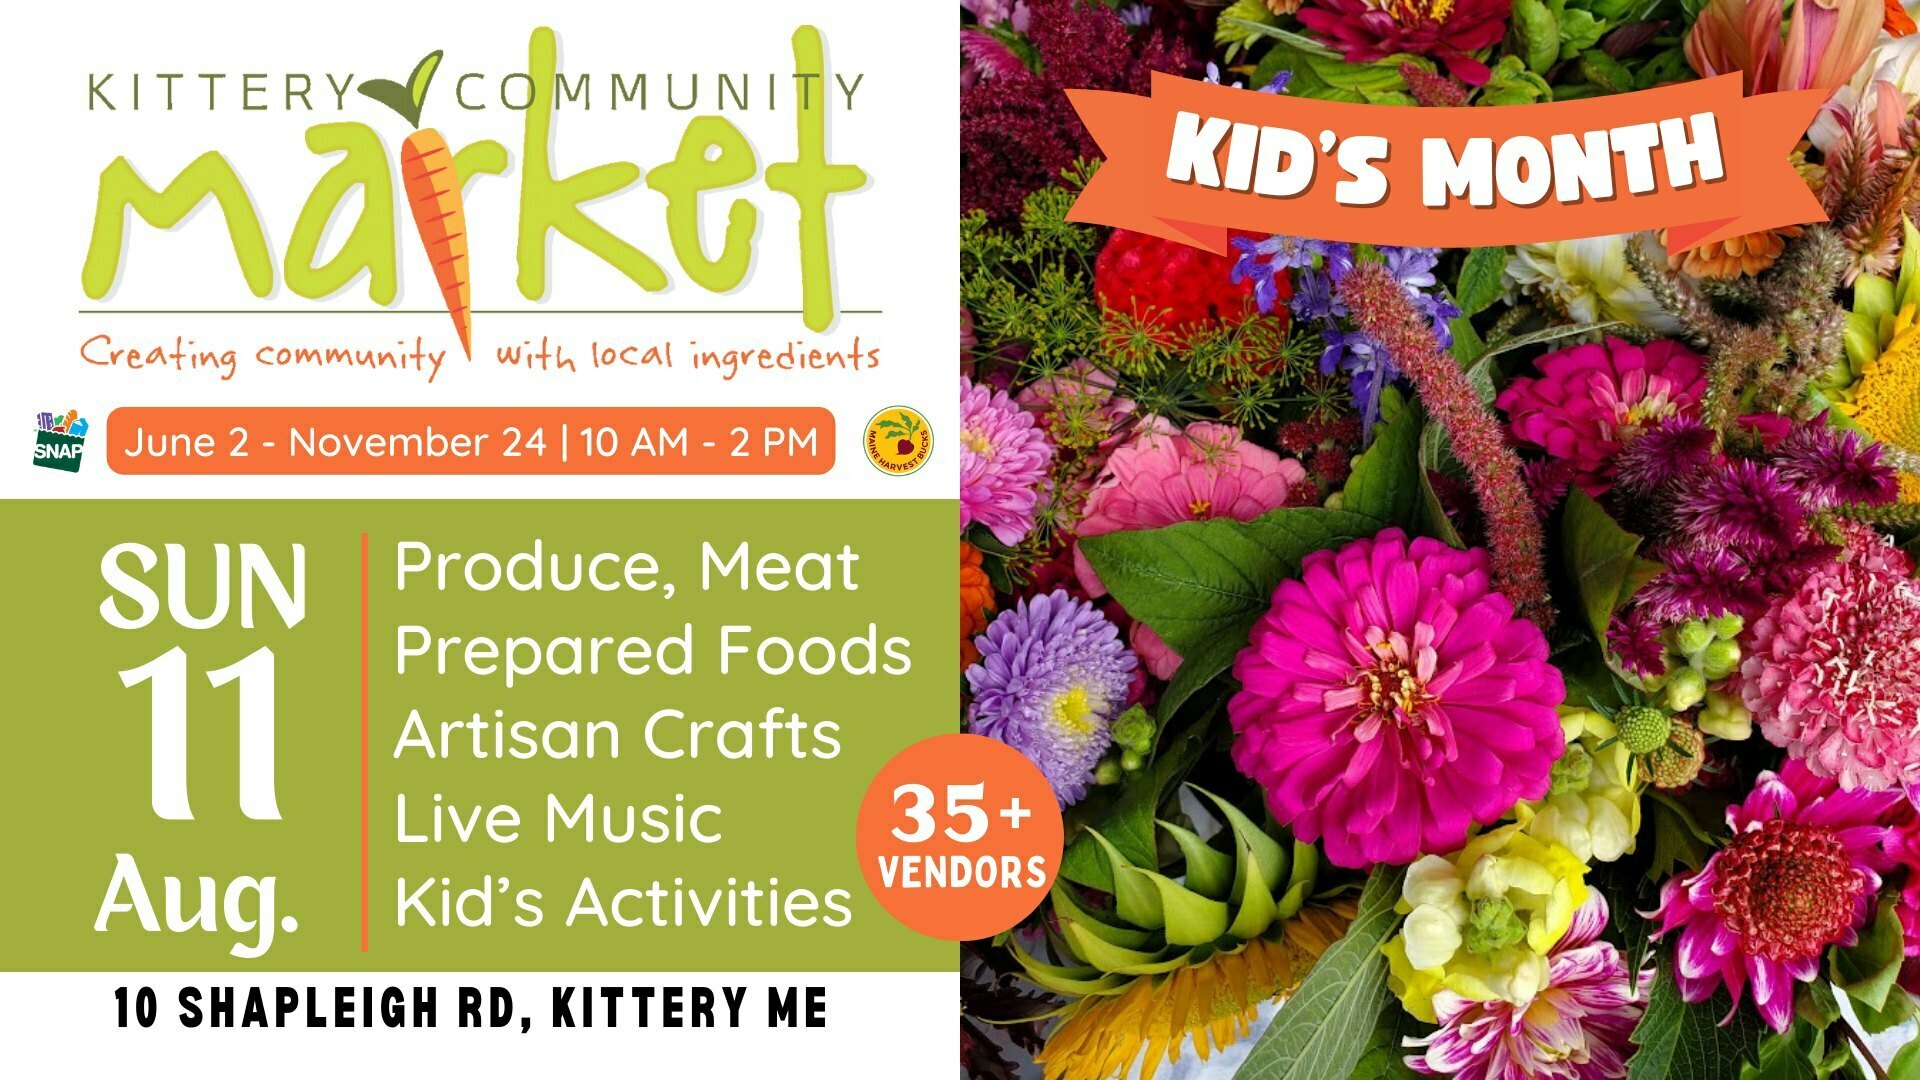 Kittery Community Market | Sunday, Aug 11 | 10-2 PM, Kittery, Maine, United States